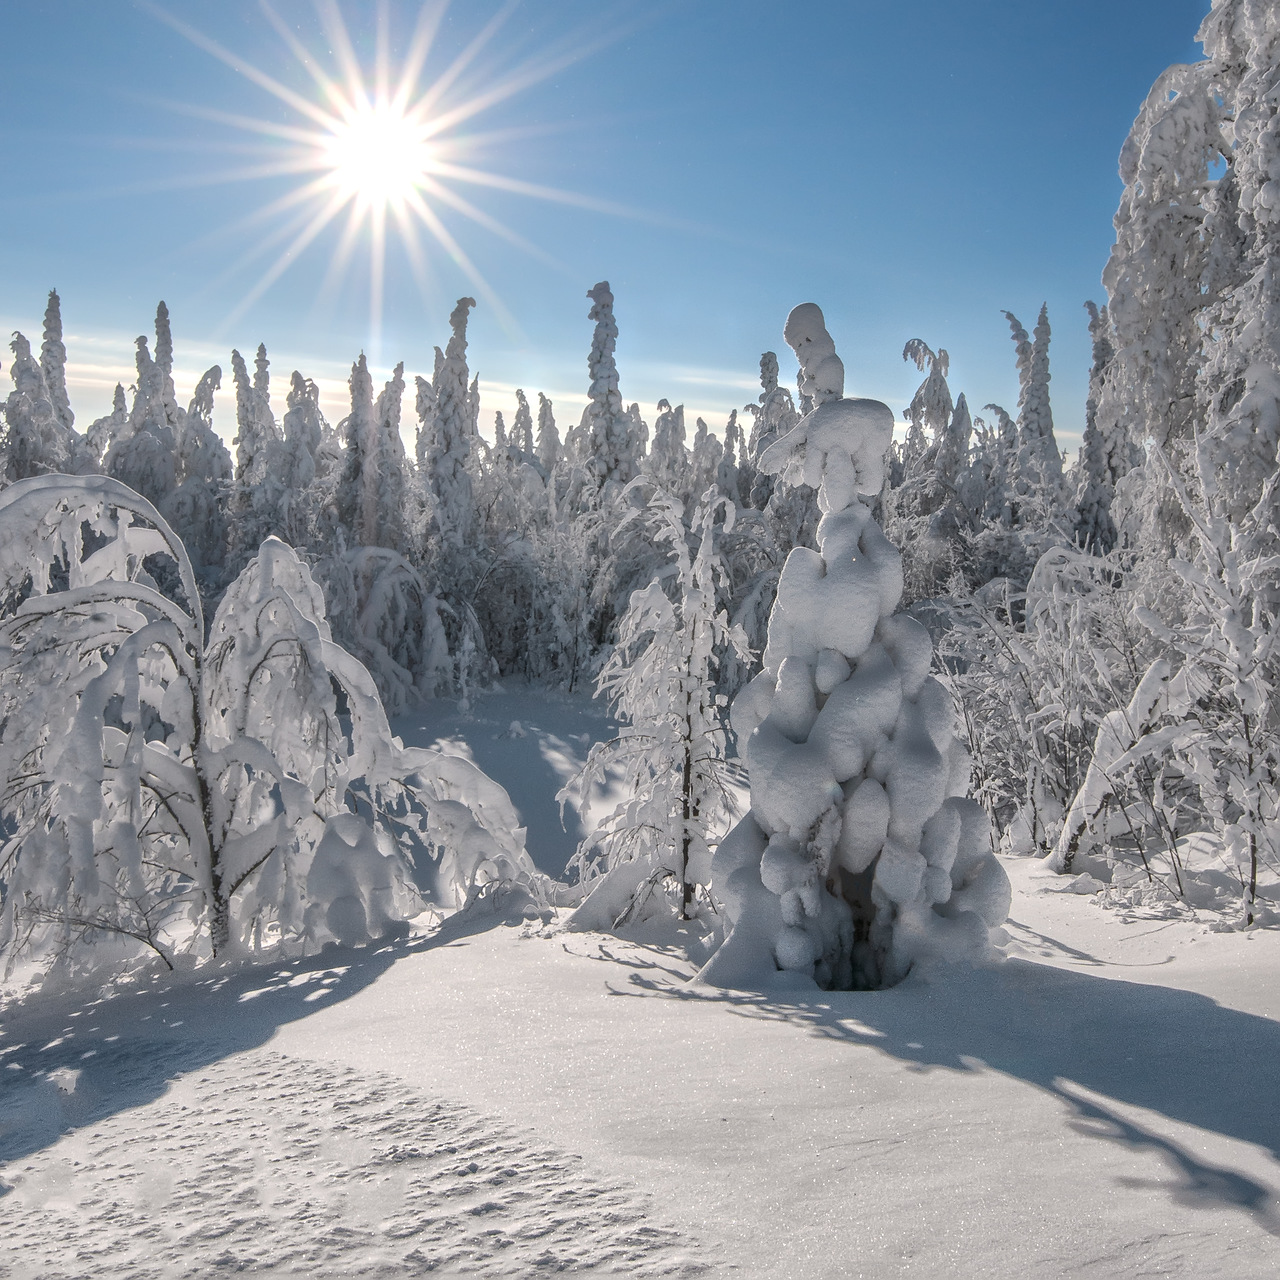 Fotografie zimy: Slunce v zimním lese